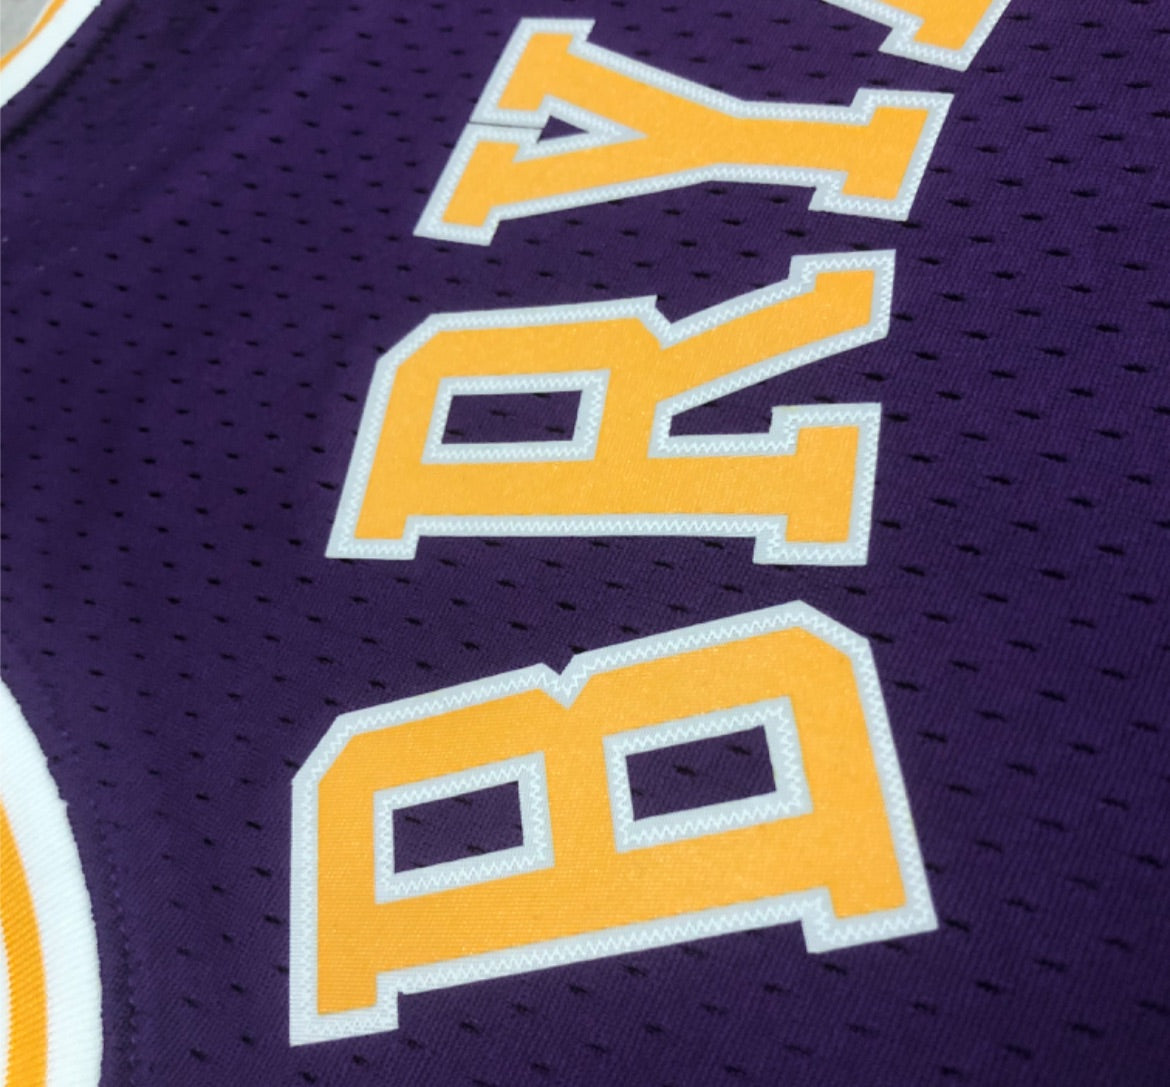 Mitchell & Ness, Shirts, Mn Los Angeles Lakers Kobe Bryant 96 97 Jersey